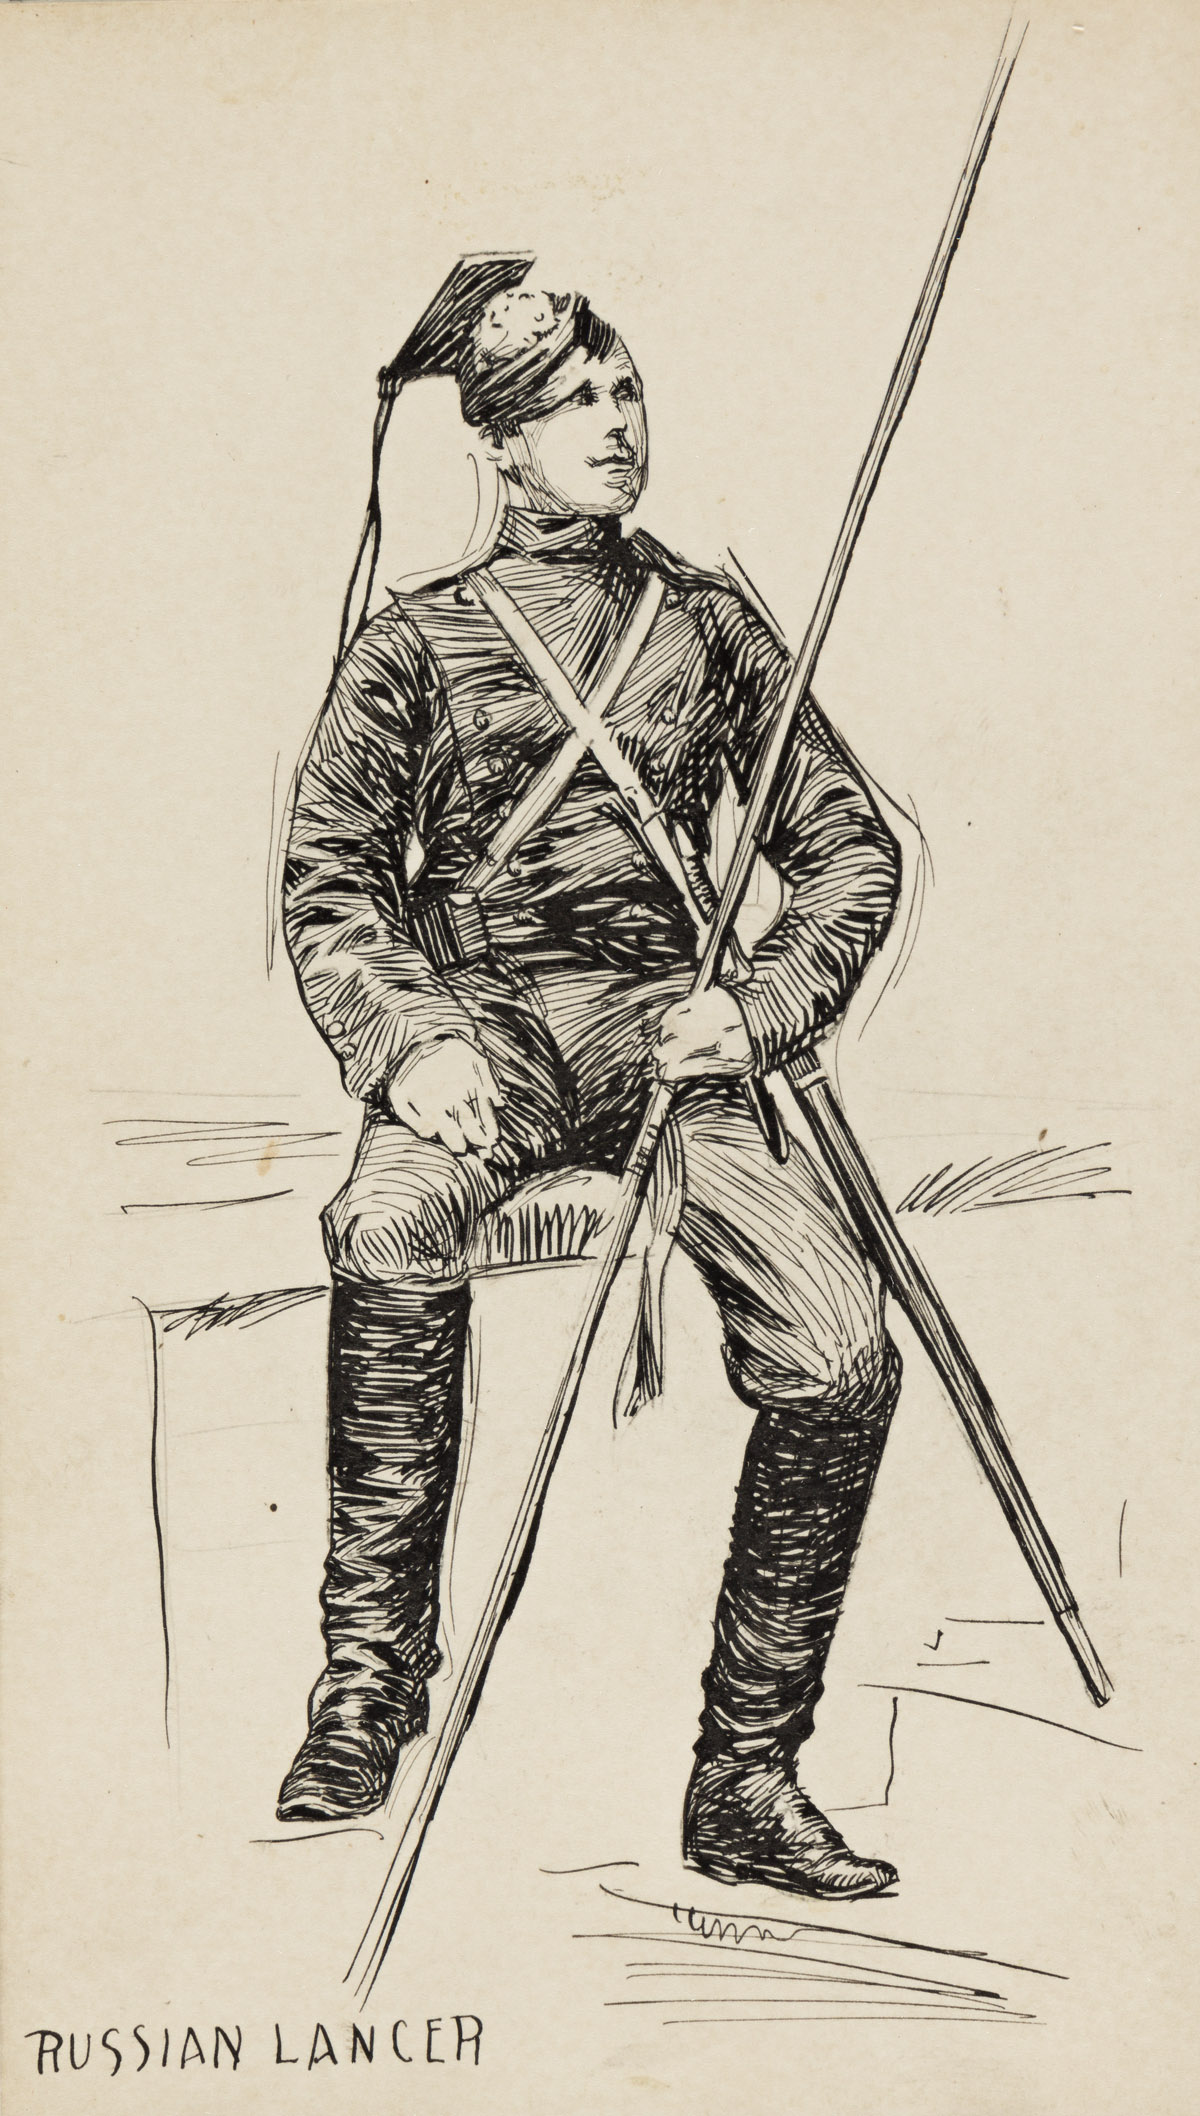 EDWARD HOPPER A Russian Lancer.